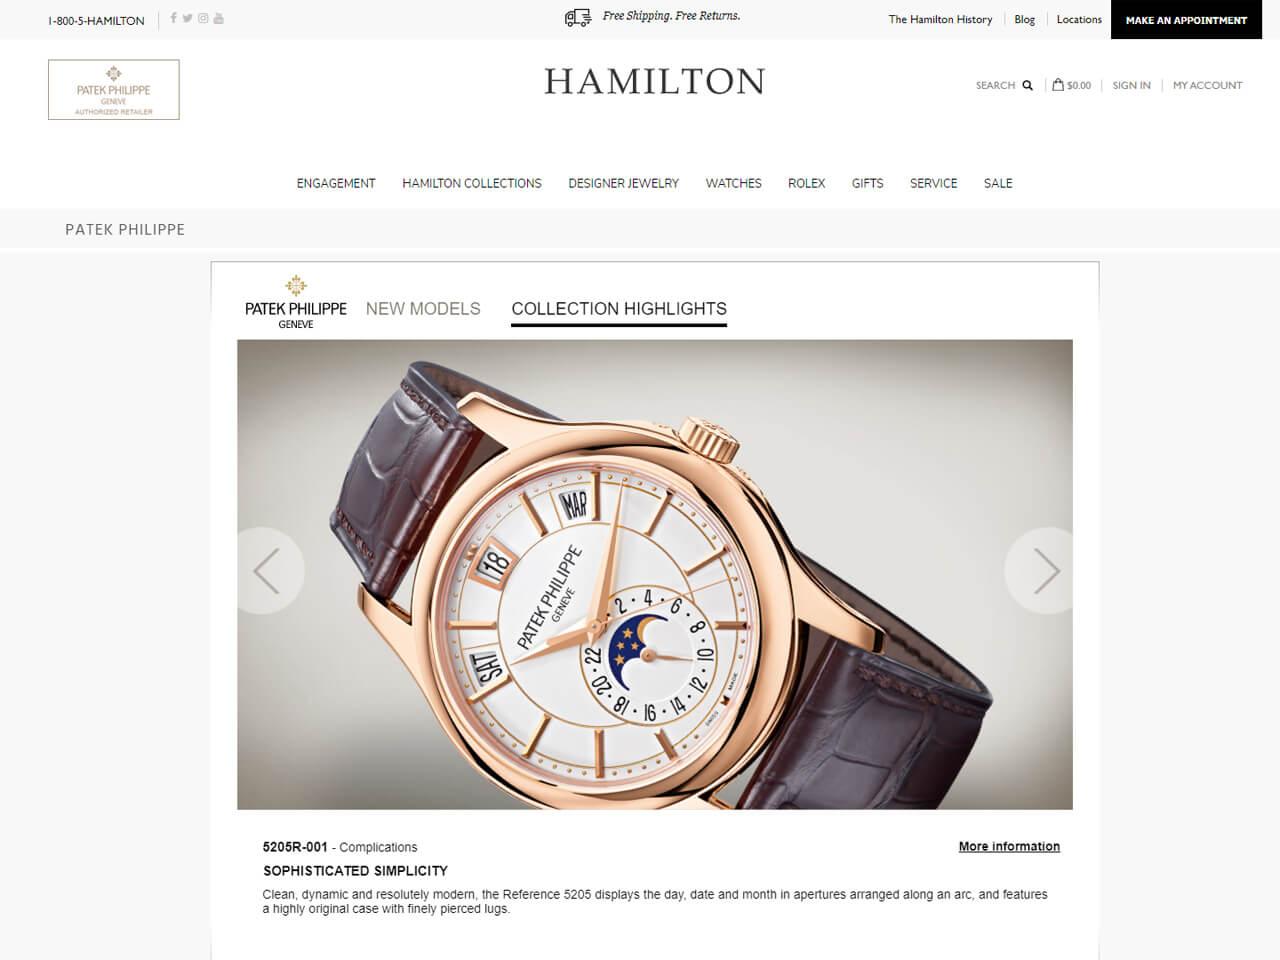 パテック・フィリップがオンライン販売を解禁！急加速する高級腕時計のネット販売について考える